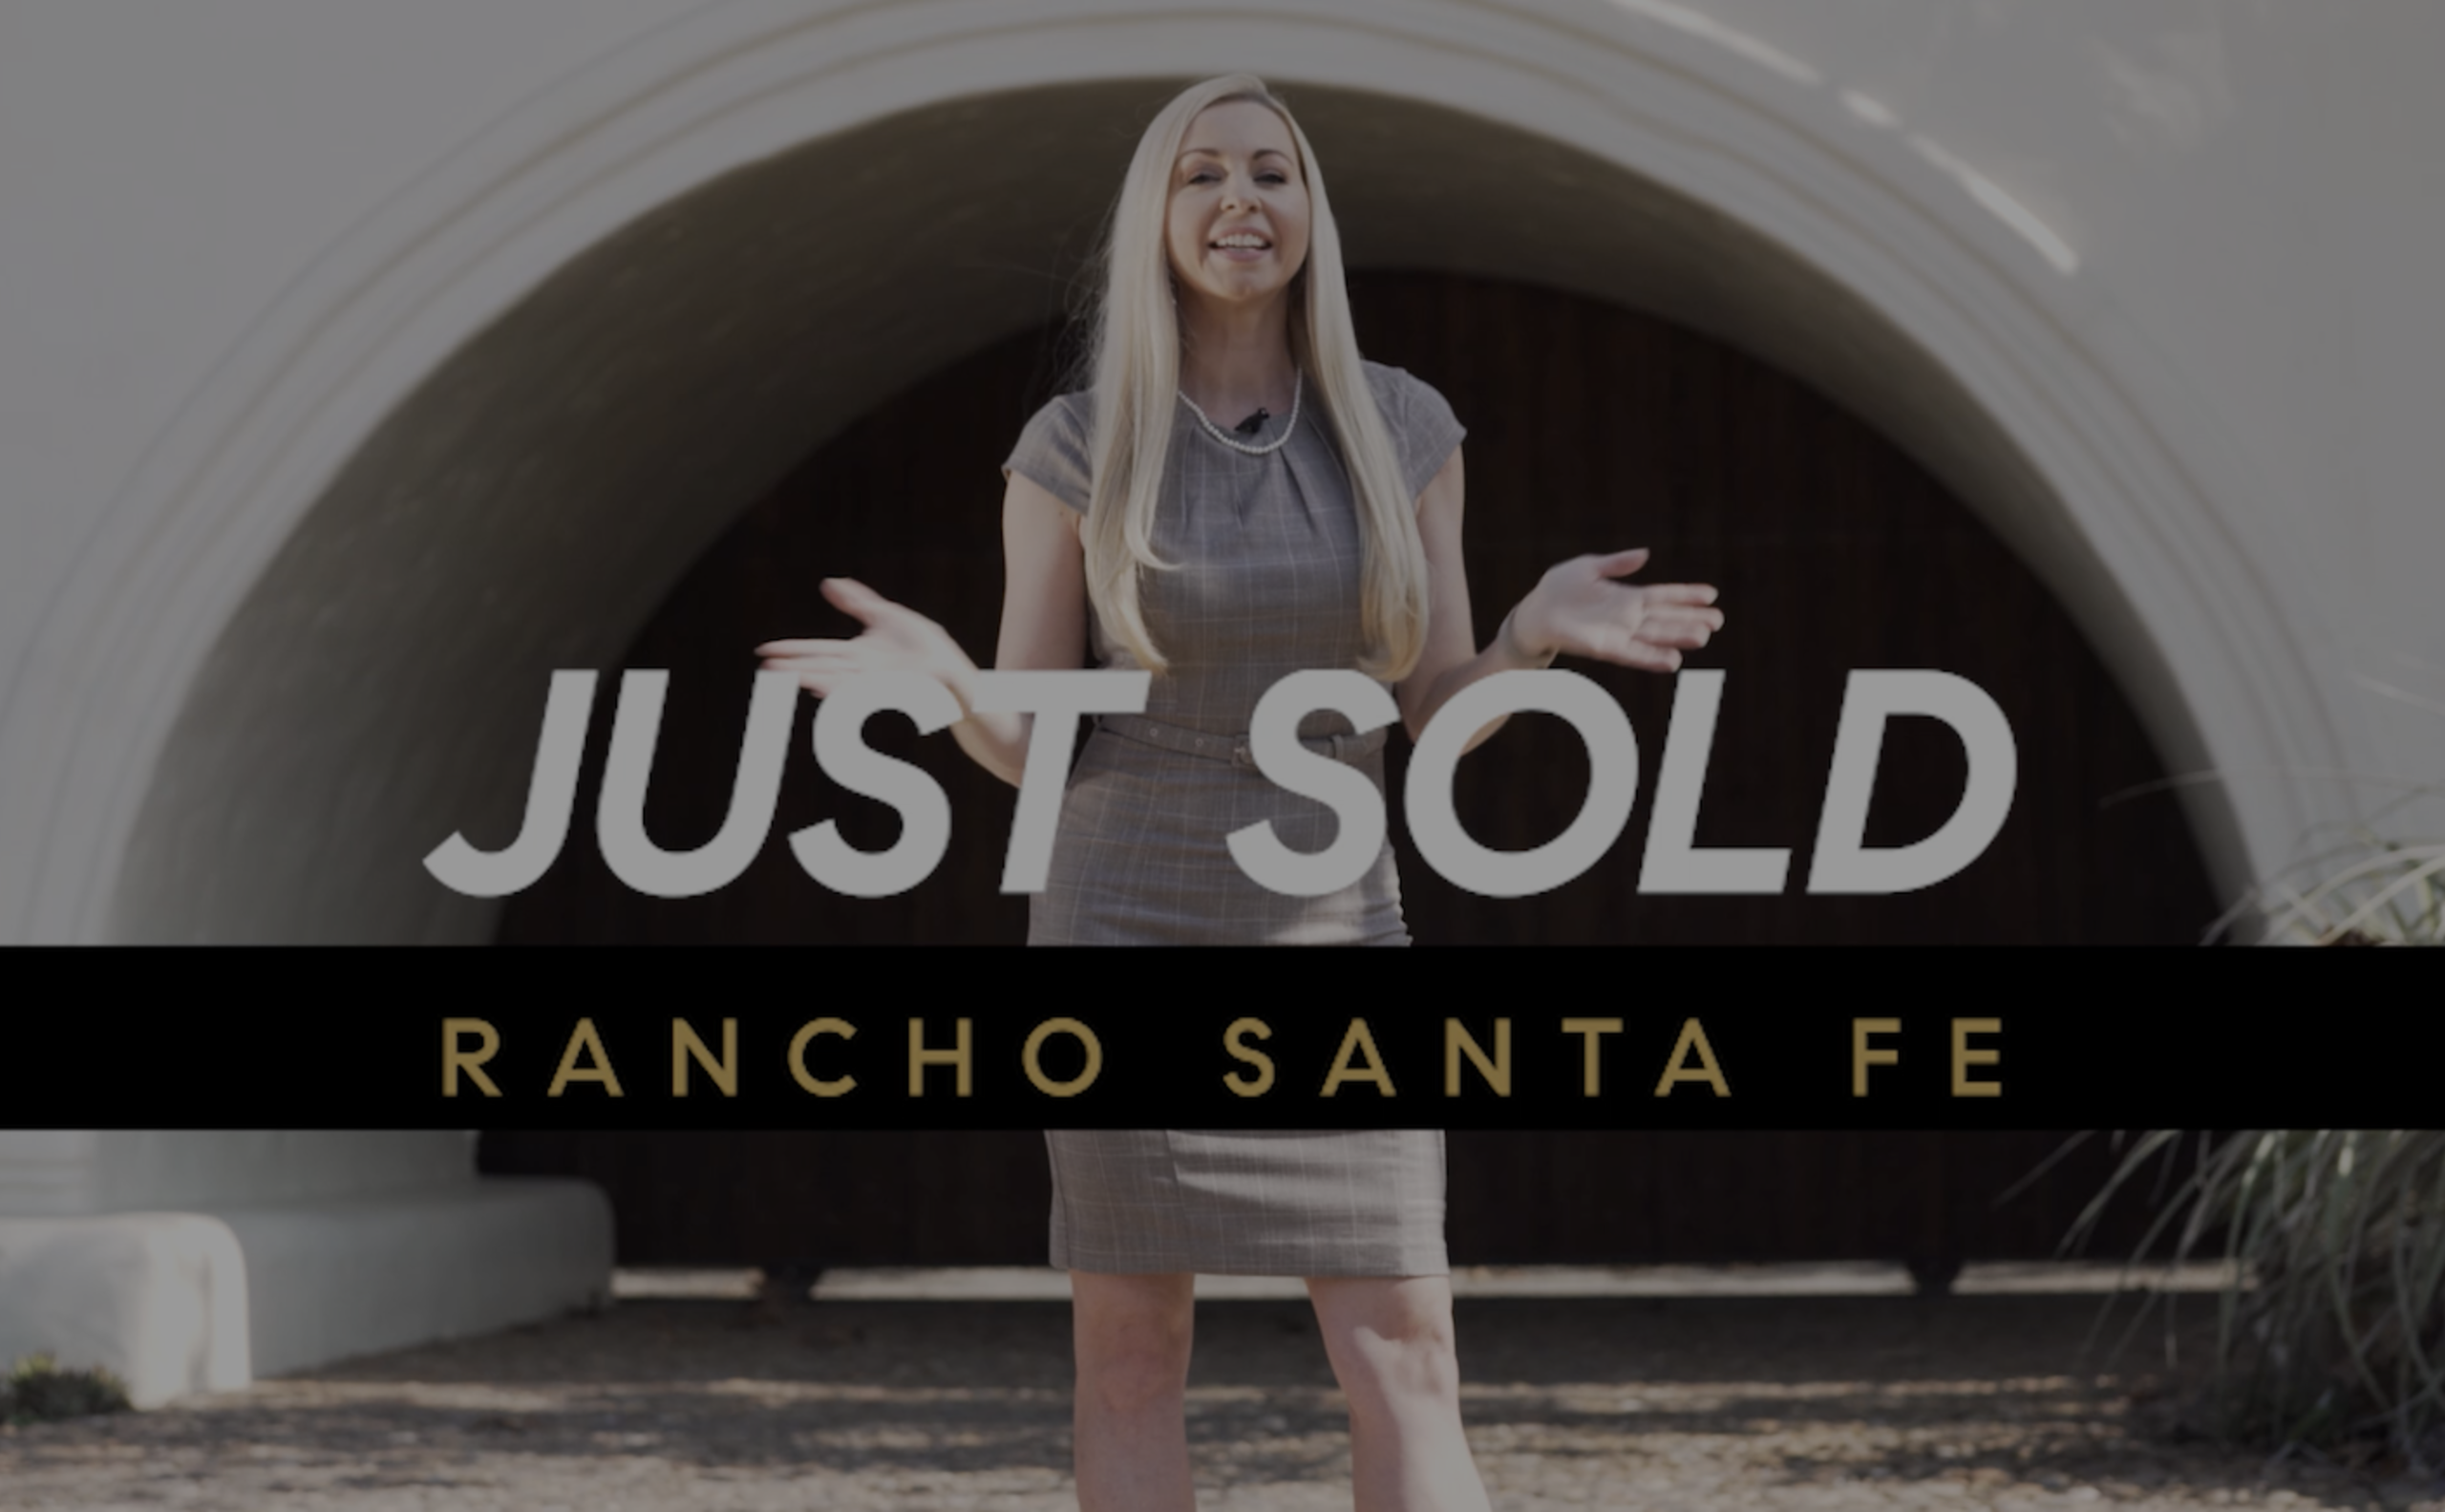 Sold in Rancho Santa Fe!